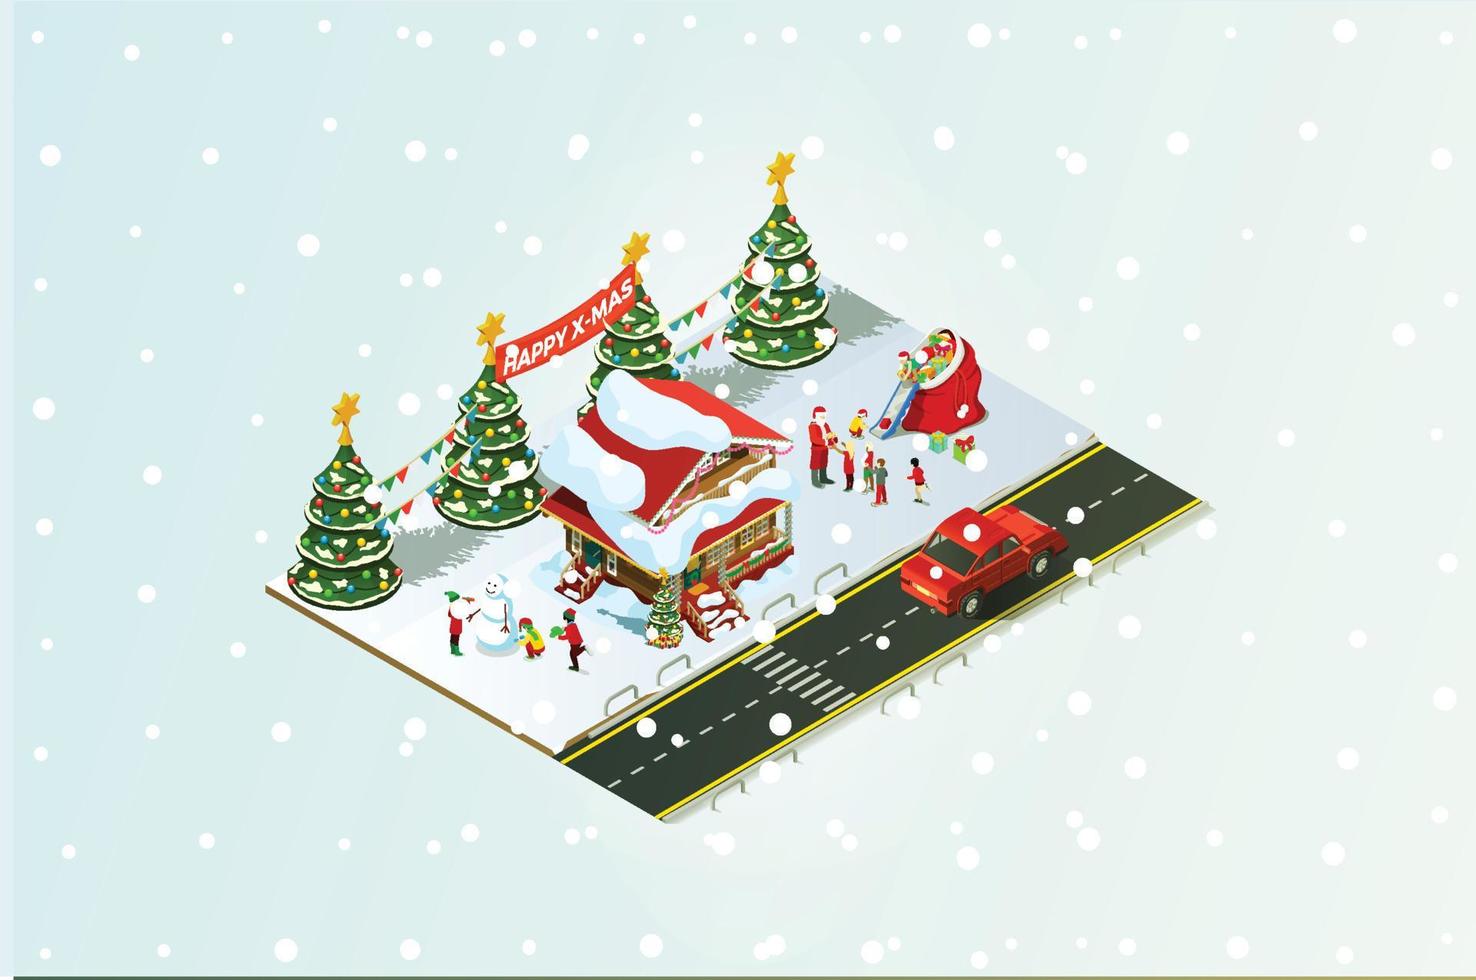 isometrische illustratiegelukkig mensen verzamelen samen en vieren Kerstmis in de omgeving van de boom onder de sneeuw, geschikt voor diagrammen, infografieken, boek illustratie, en andere grafisch verwant middelen vector